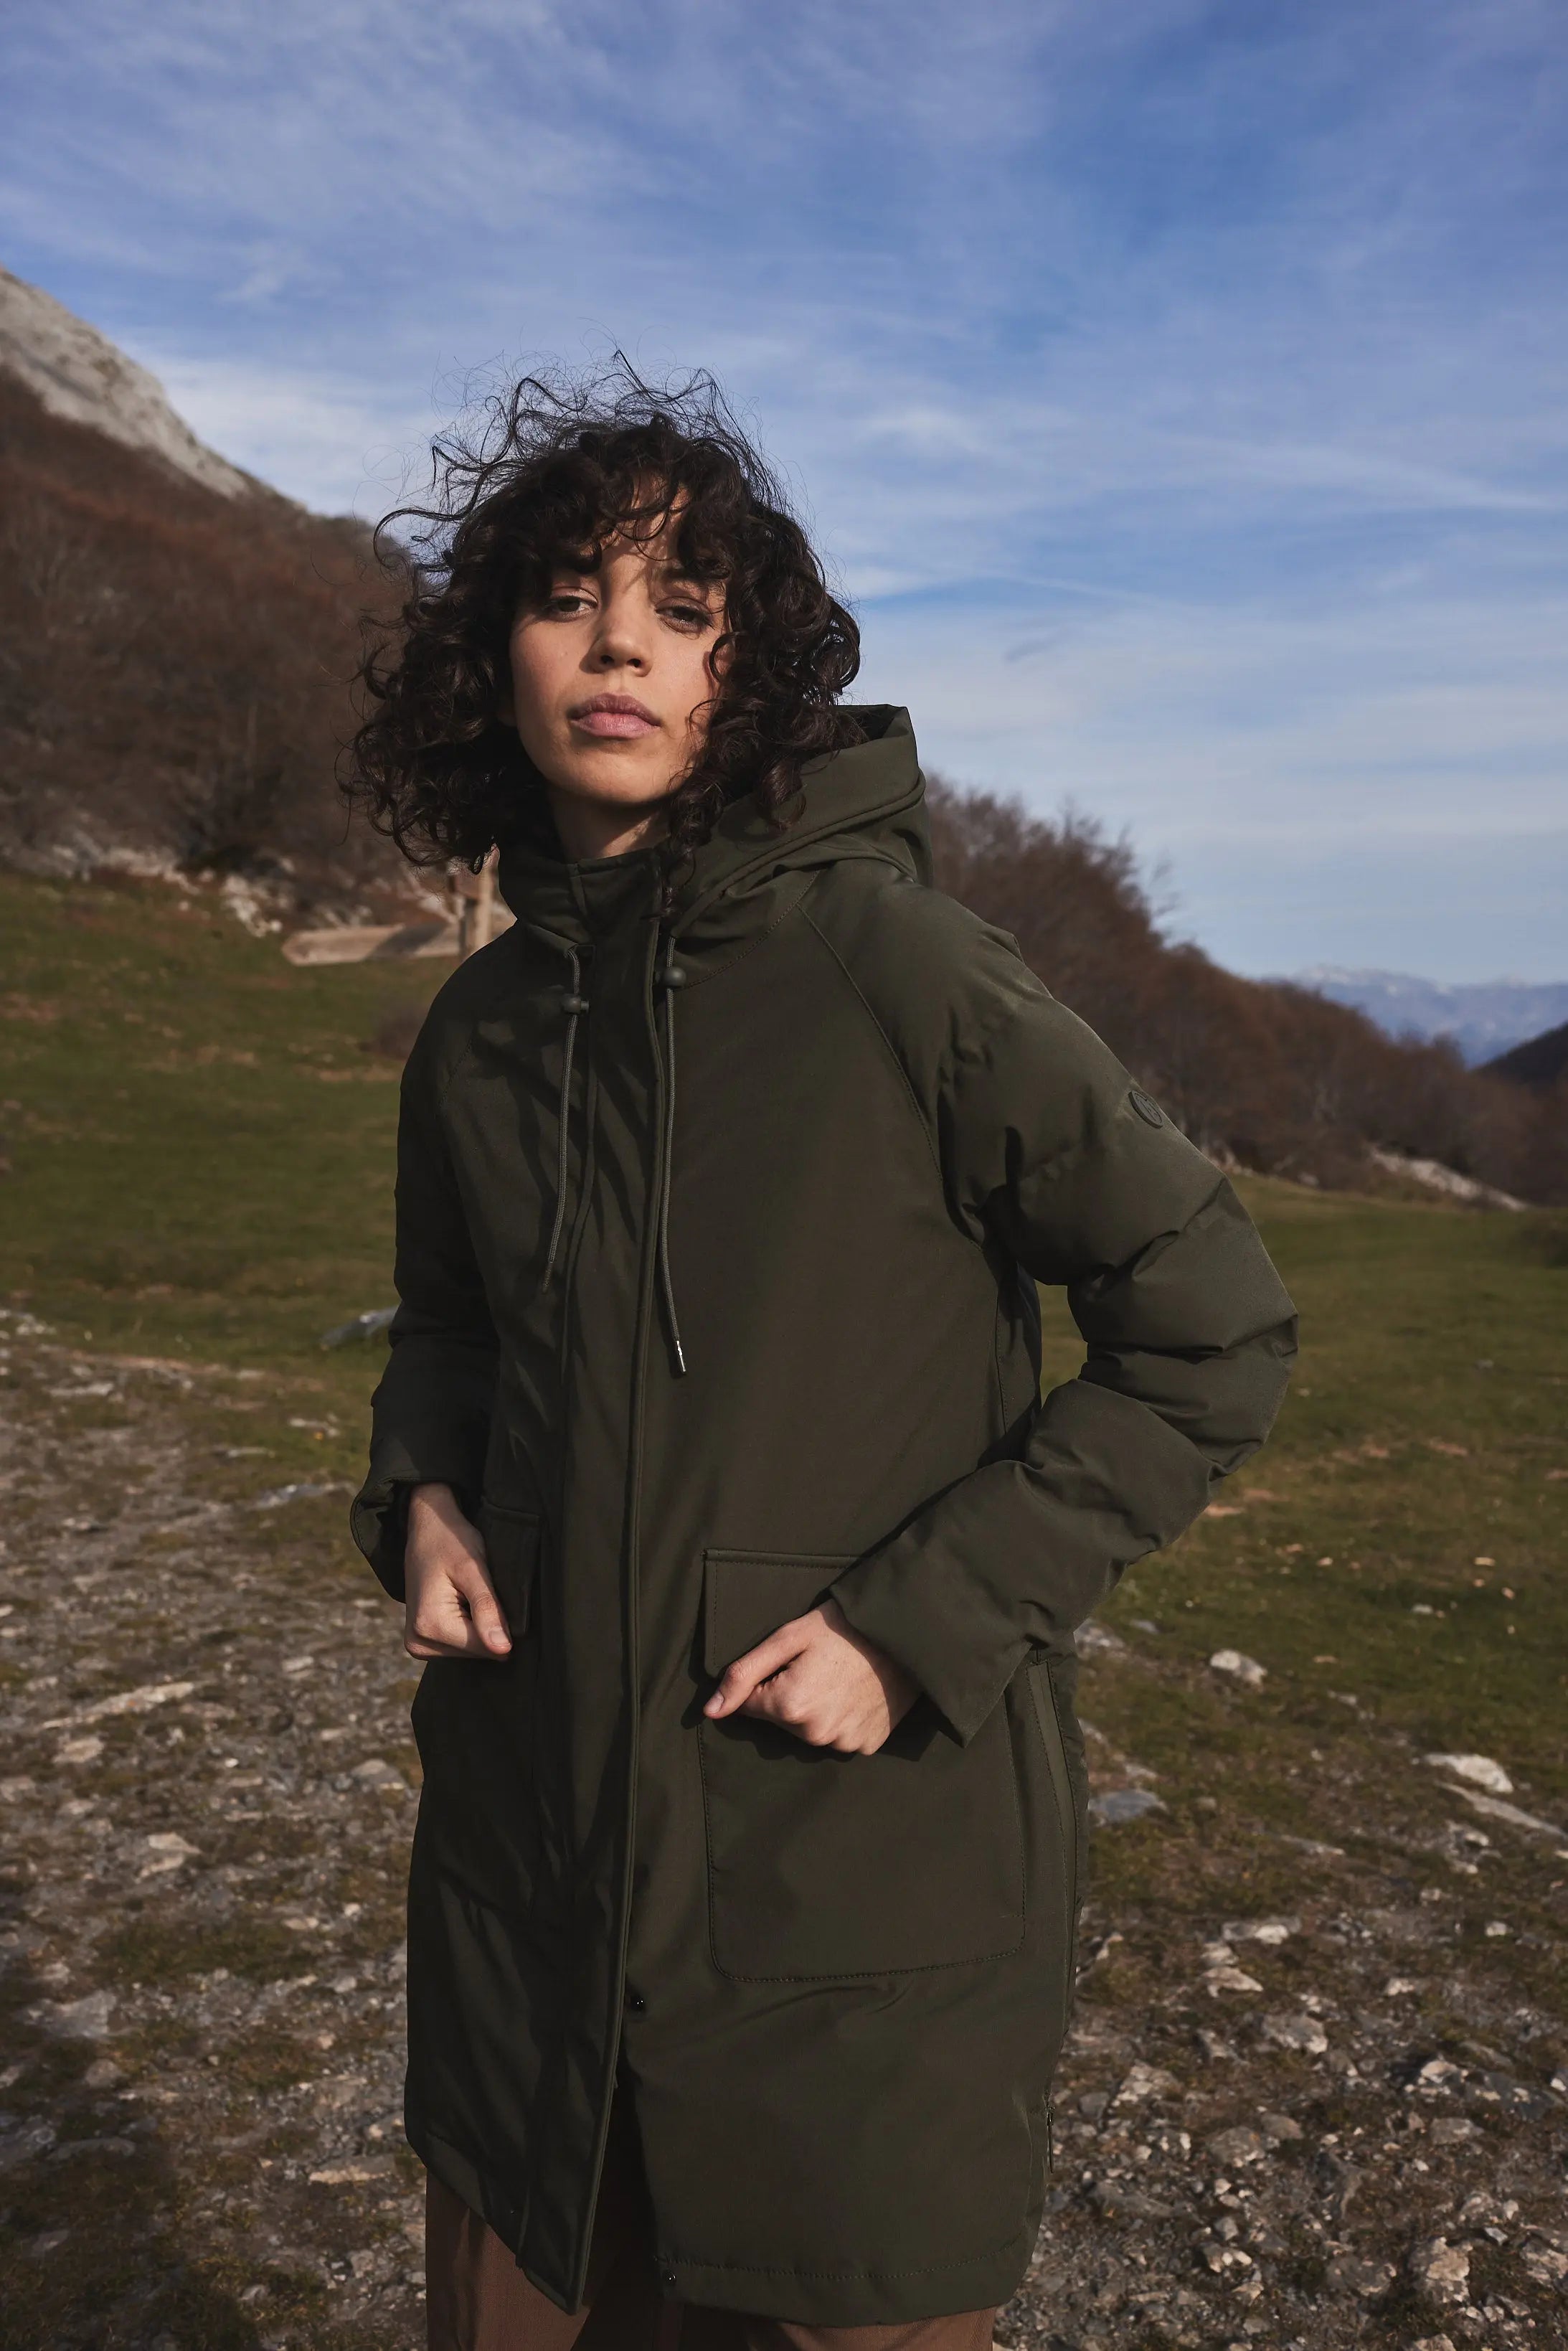 Abrigo impermeable transpirable de mujer Tantä color Verde – Tantä Rainwear